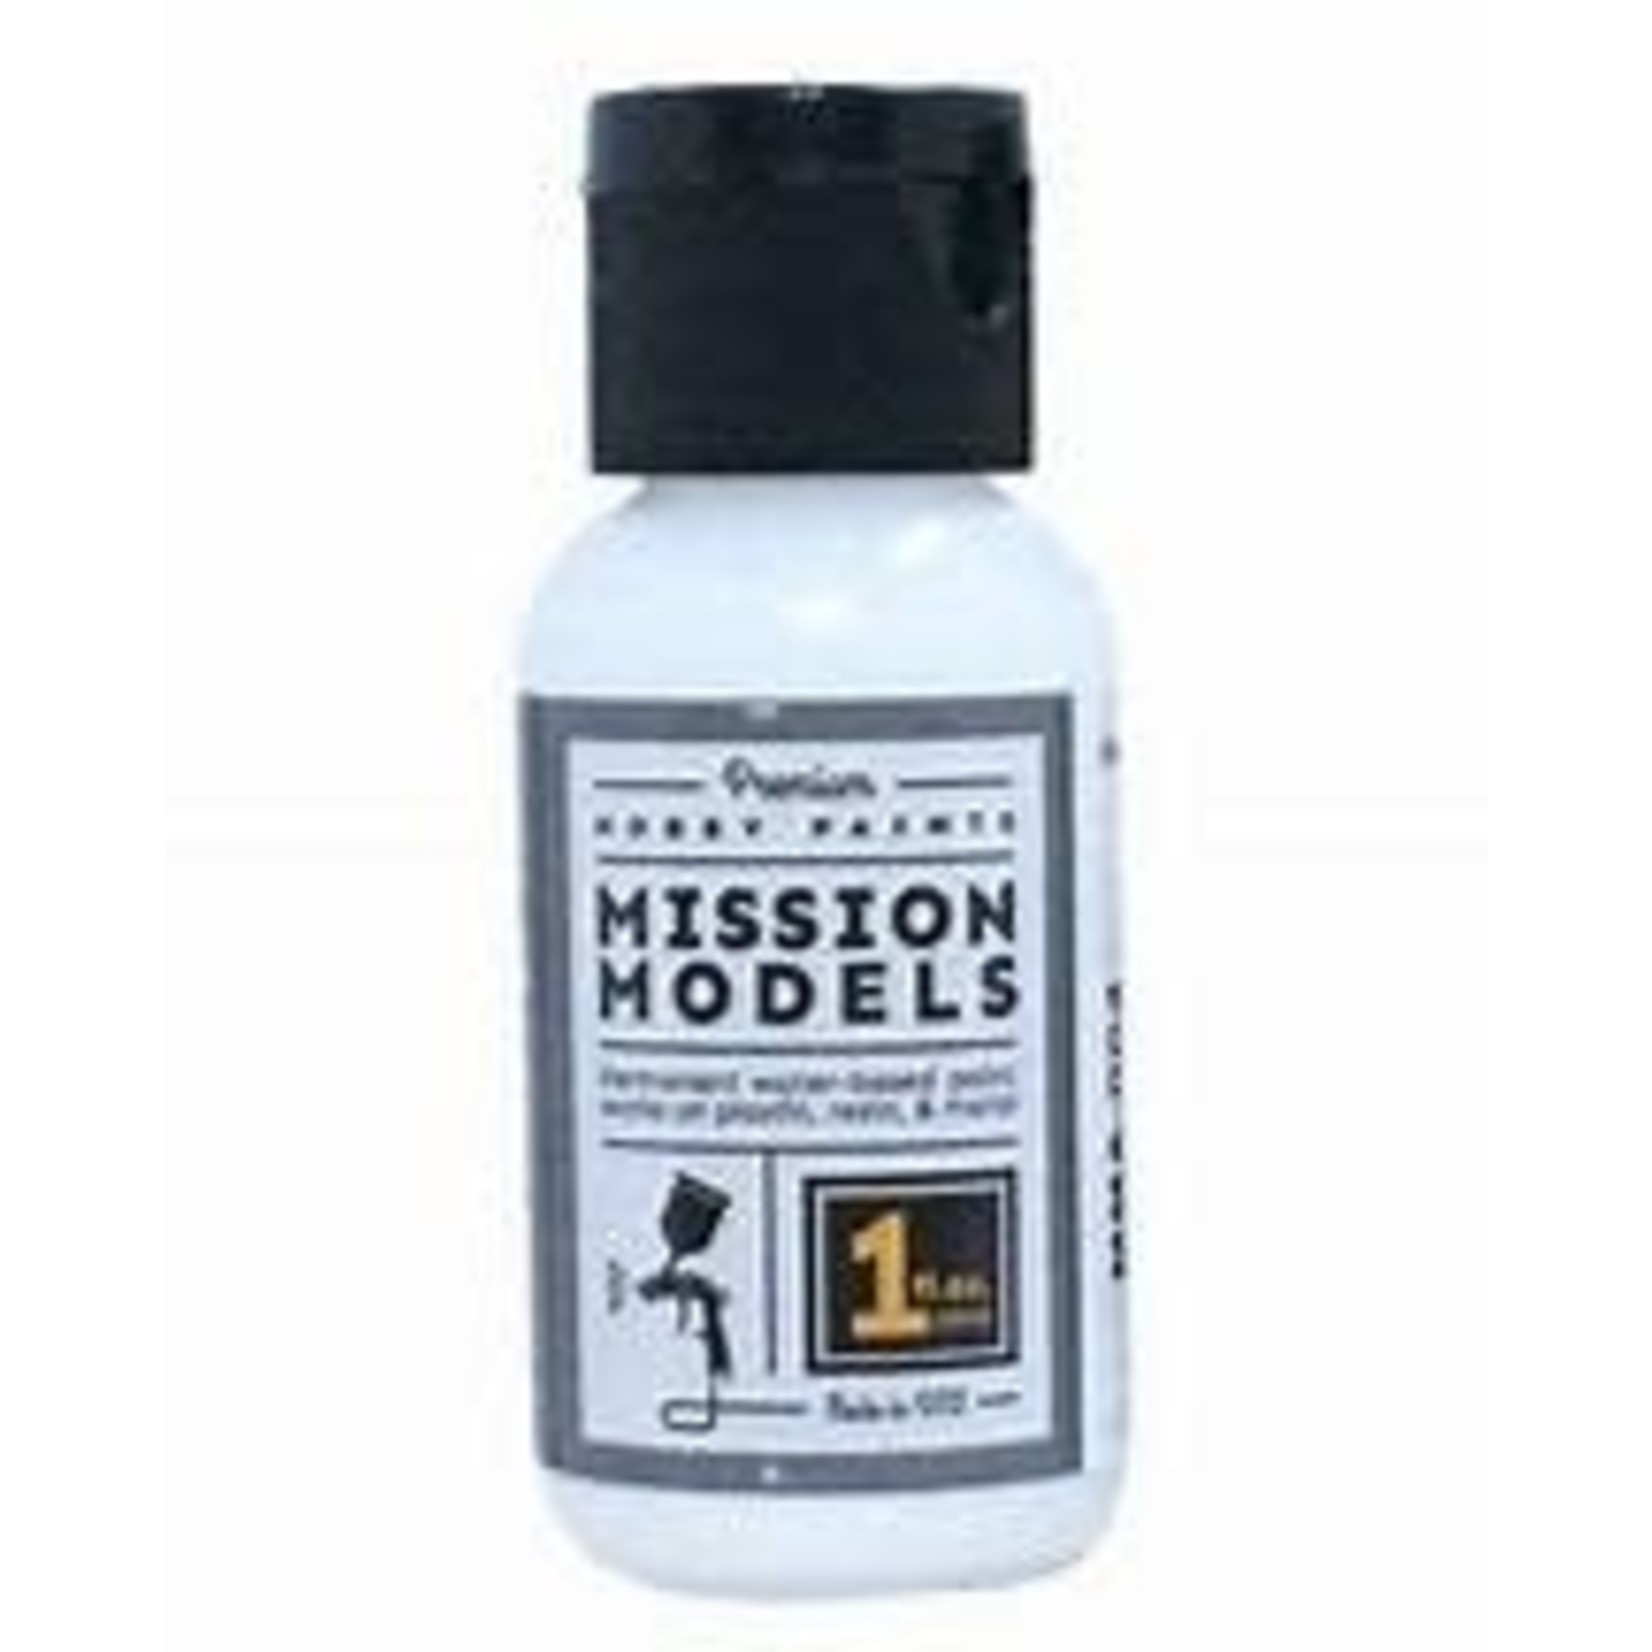 Mission Models Flat Coat Clear 1oz